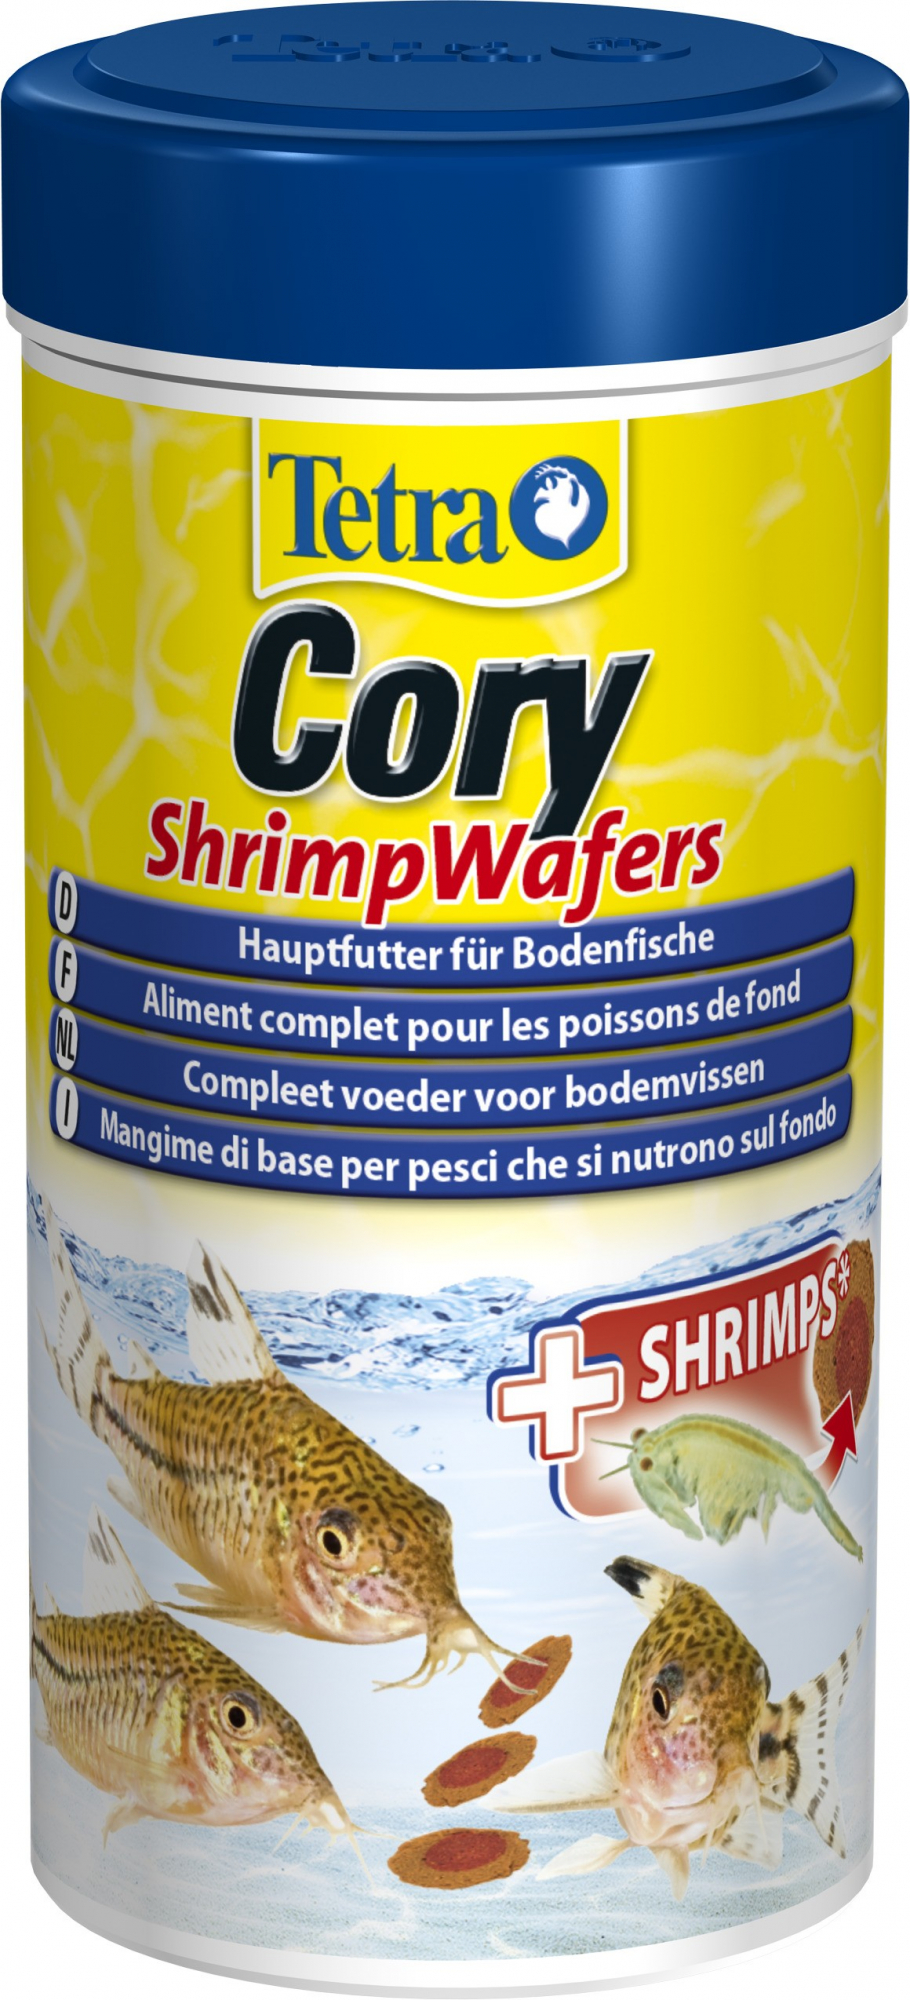 Tetra Cory Shrimp Wafers per pesci che si nutrono sul fondo